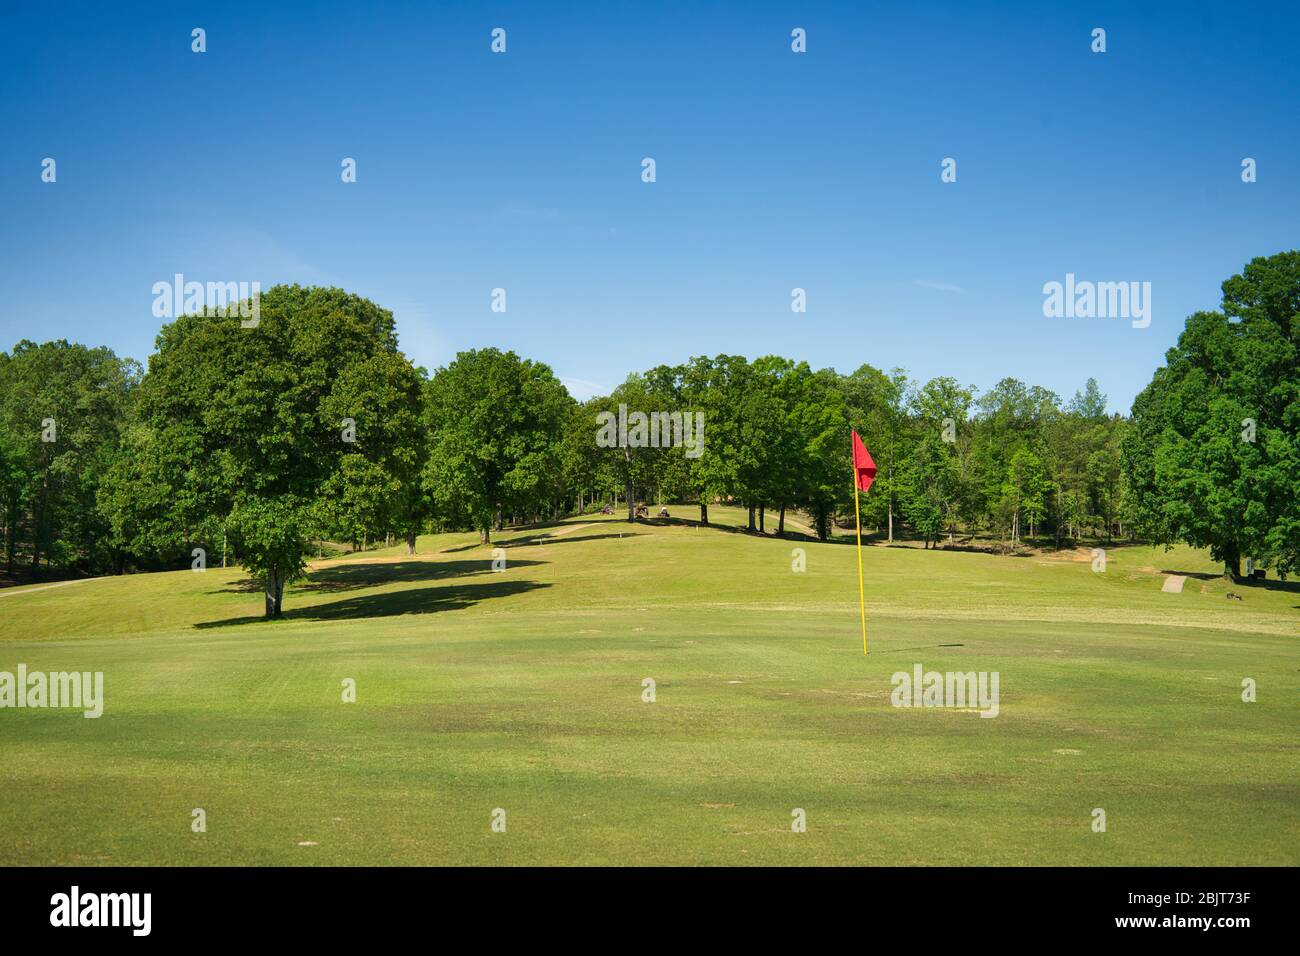 Le Oak Hill Country Club de Sulligent, Alabama, est ouvert et prêt à jouer. Le golf est un excellent moyen de sortir et de profiter du temps pendant cette pandémie. Banque D'Images